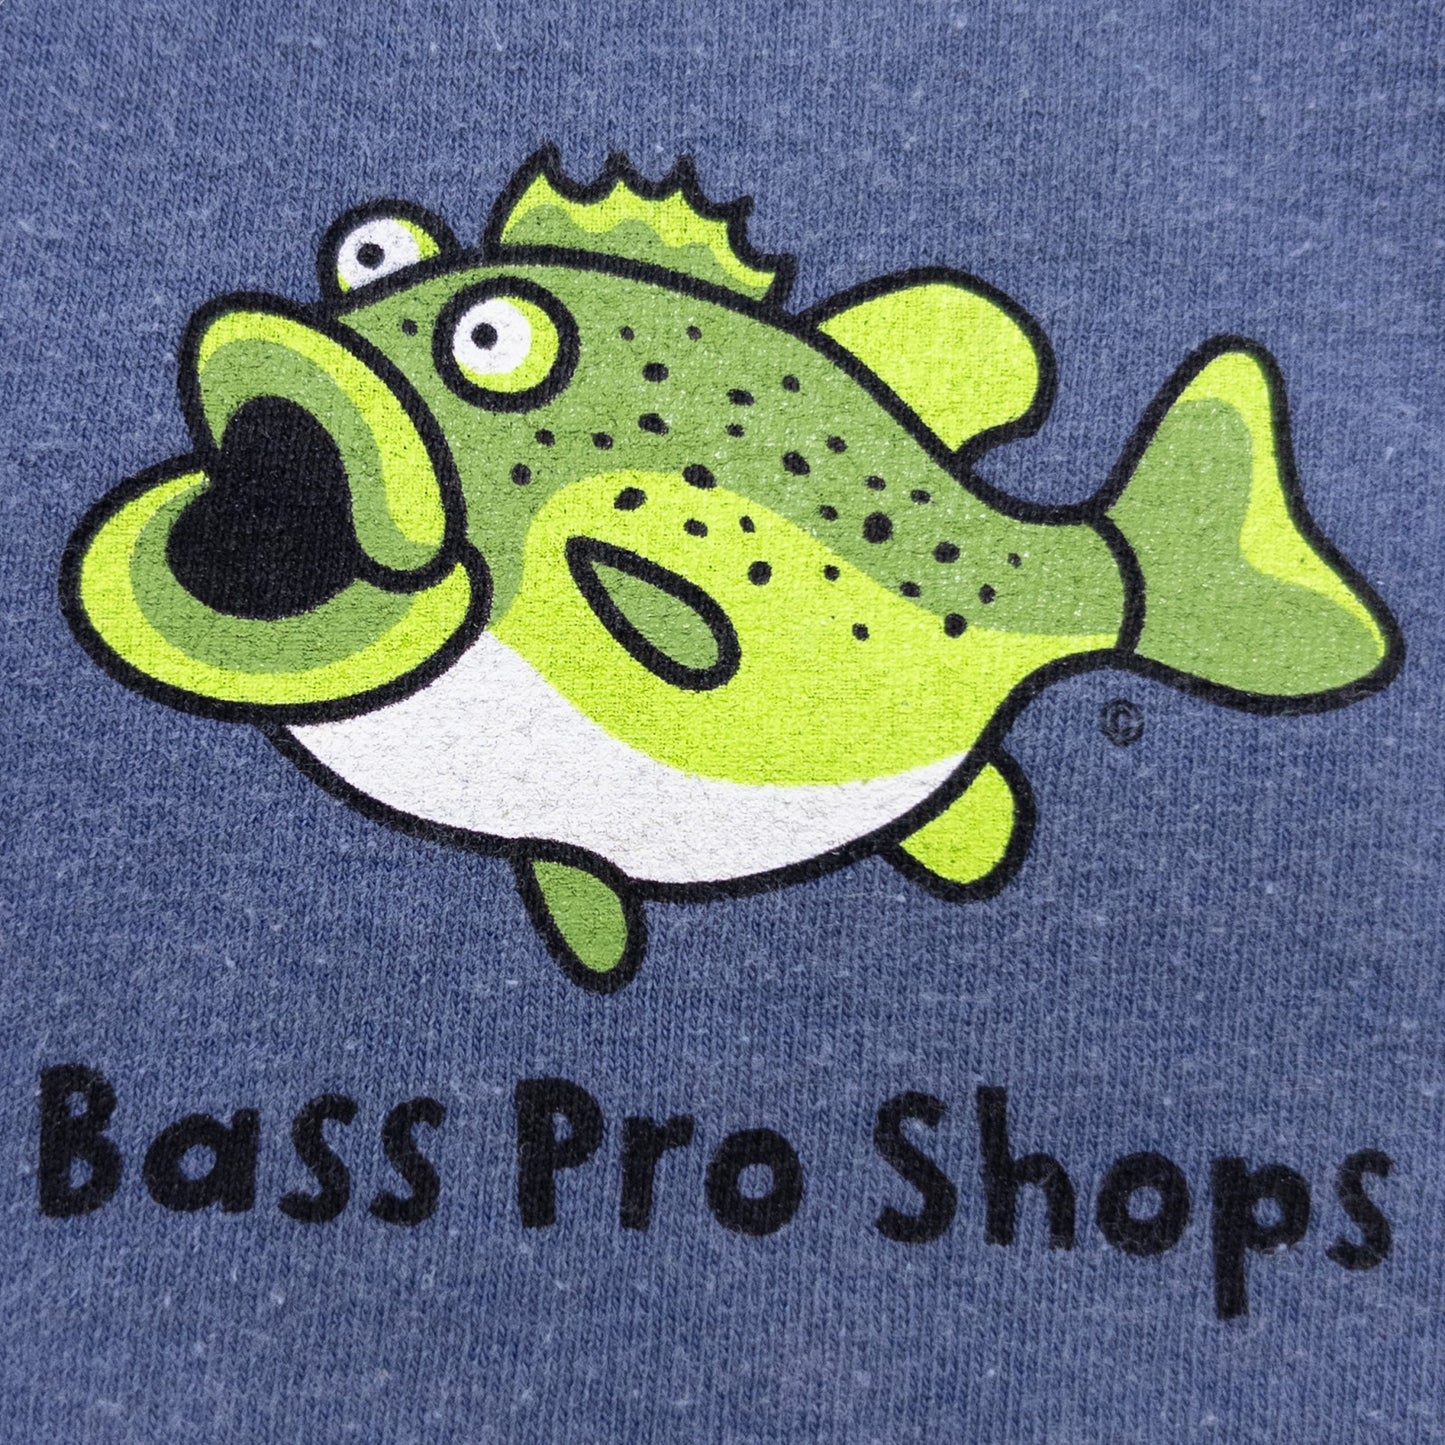 00s ”Bass Pro Shops” XL